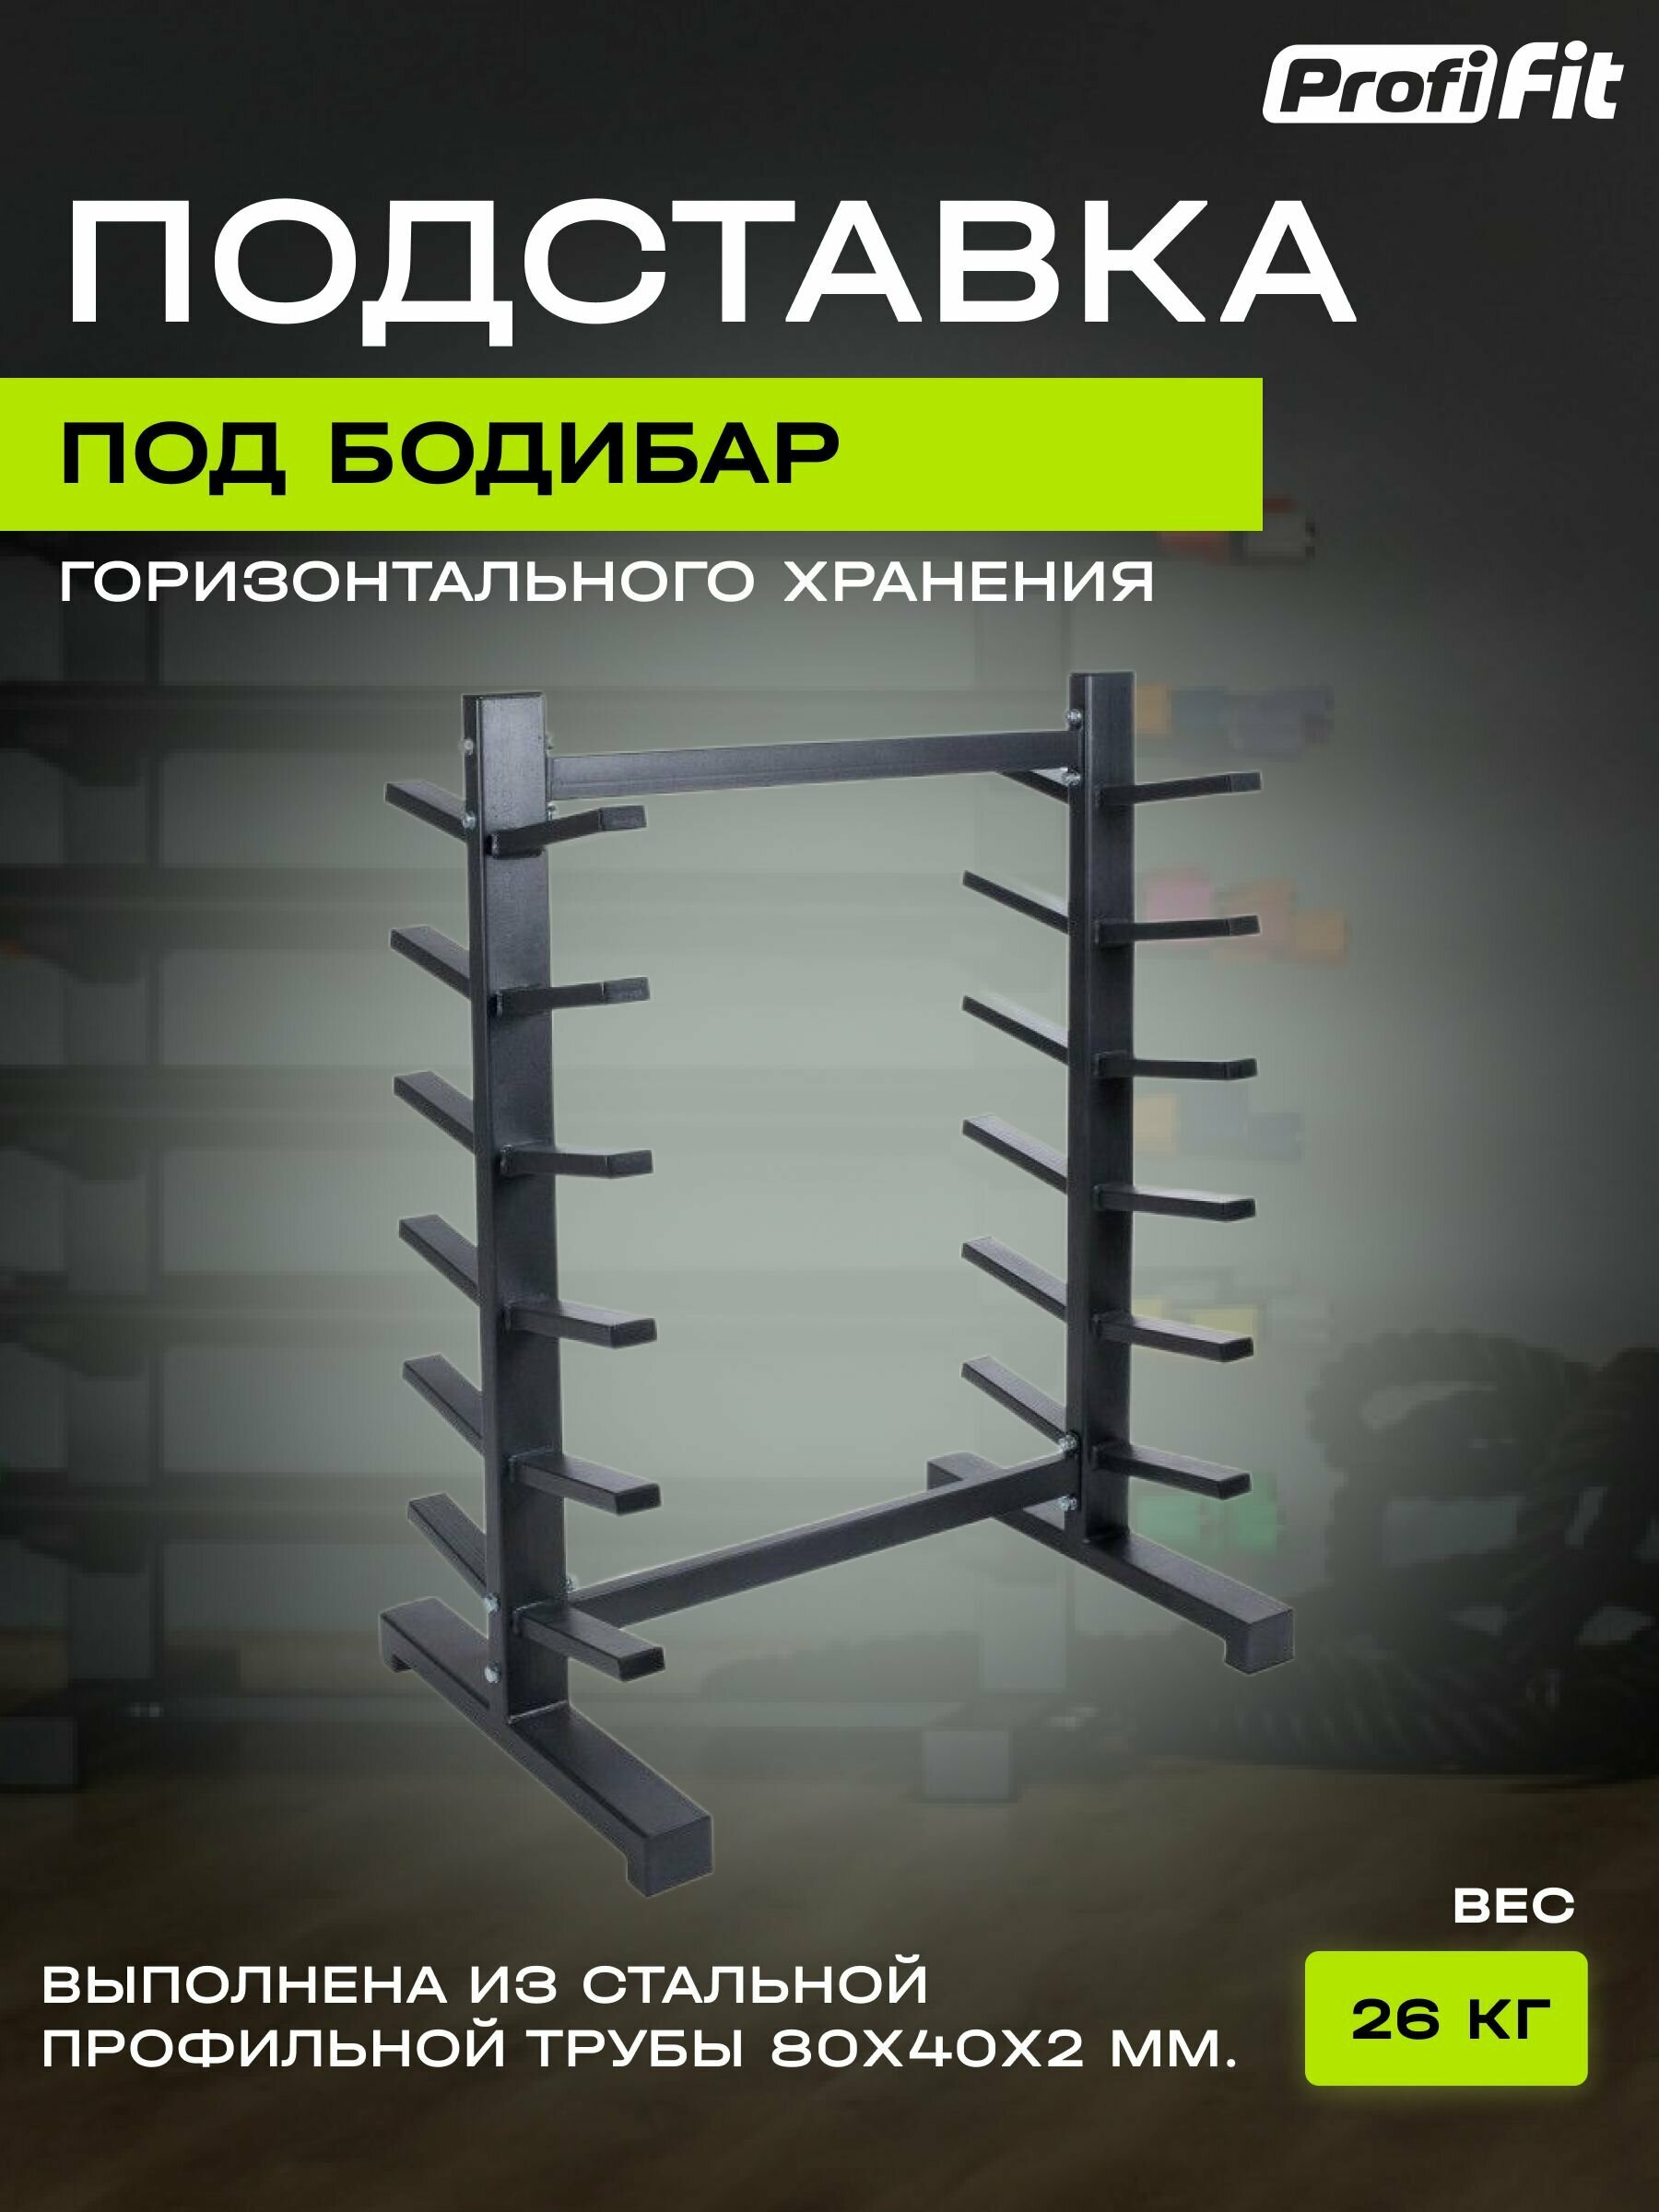 Подставка под бодибары (горизонтального хранения) PROFI-FIT RUS 5405